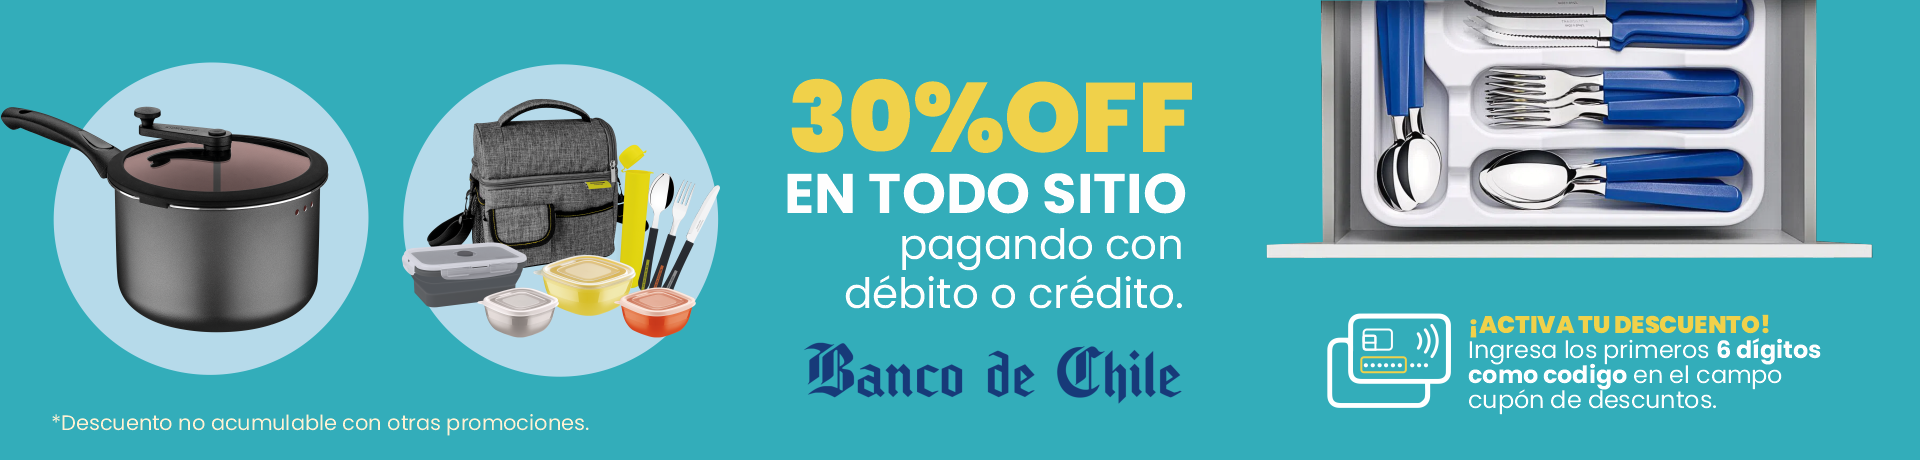 Alianza - Banco chile - Desktop